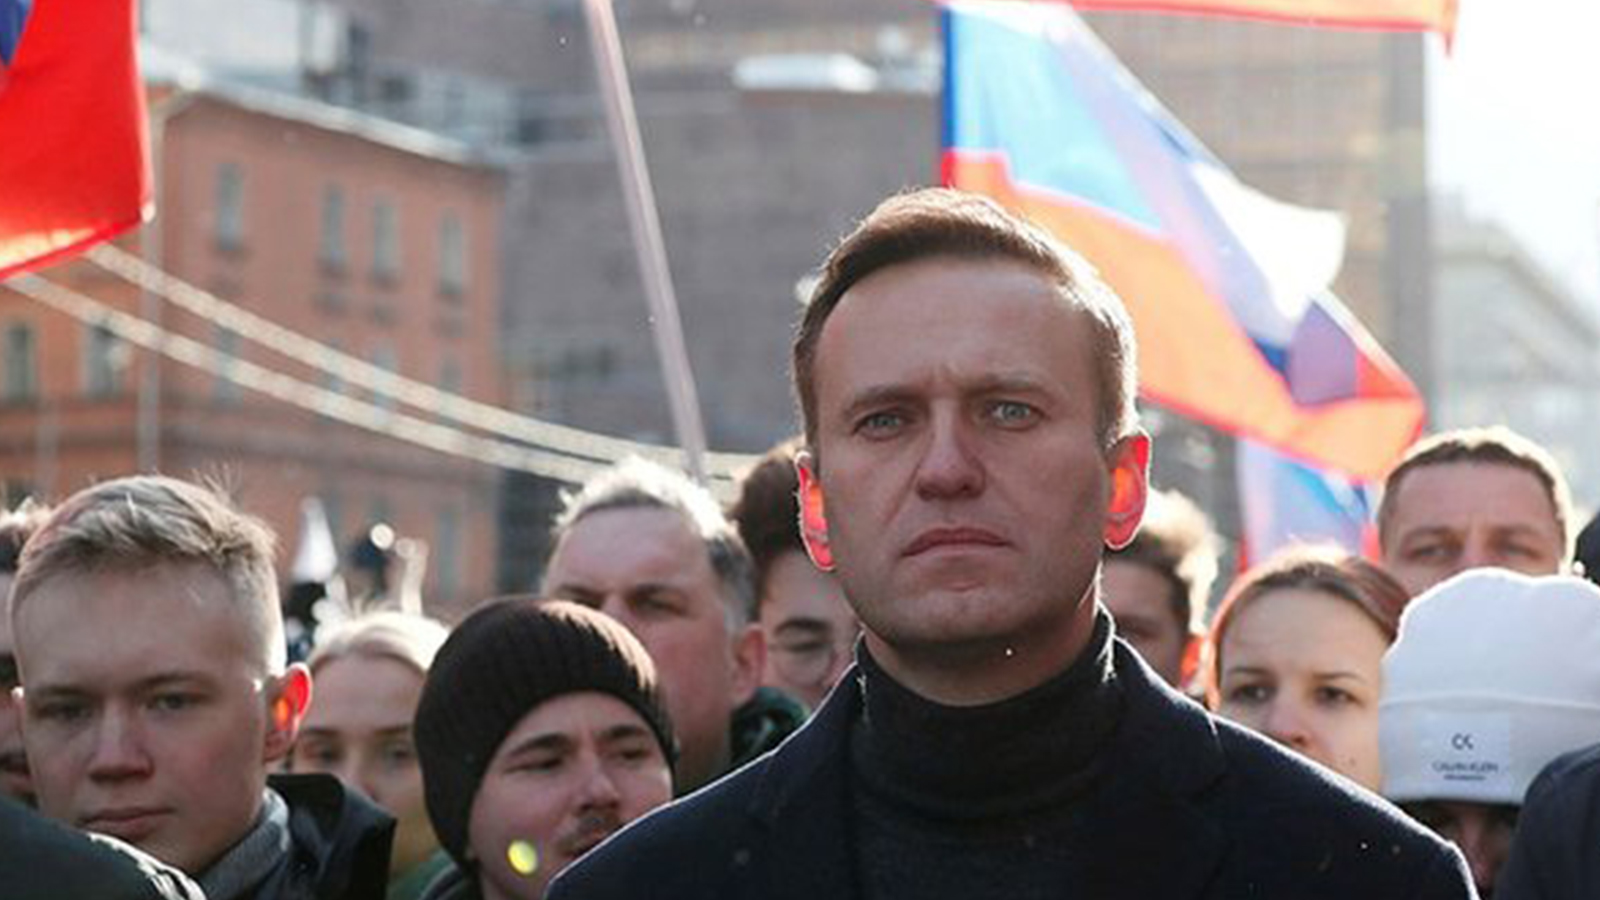 1.Aleksey Navalni: Rusya'nın önde gelen muhalefet liderlerinden Aleksey Navalni, Batılı uzmanların Noviçok adlı sinir gazının kullanıldığı sonucuna vardığı bir madde ile Sibirya'da zehirlendikten sonra Ağustos 2020'de tedavi için Almanya'ya uçtu. Navalni, 2021'de gönüllü olarak Rusya'ya dönerek dünya genelinde takdir topladı. Ancak ülkeye varır varmaz tutuklandı. Şu anda, siyasi amaçlarla ilişkilendirilen çeşitli suçlamalar nedeniyle hapishanede bulunuyor.